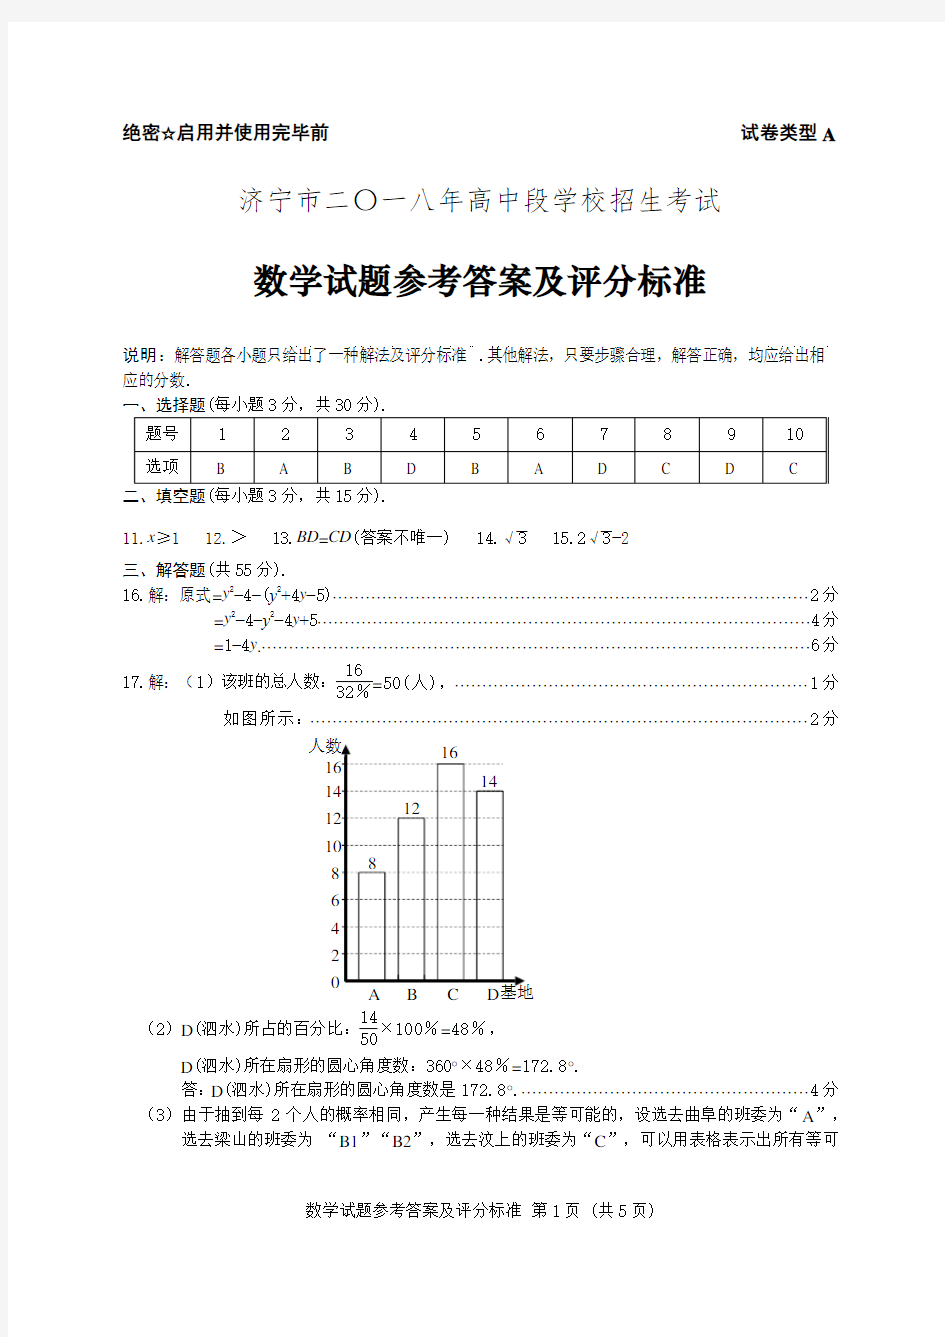 济宁市二〇一八年高中段学校招生考试数学试题参考答案及评分标准